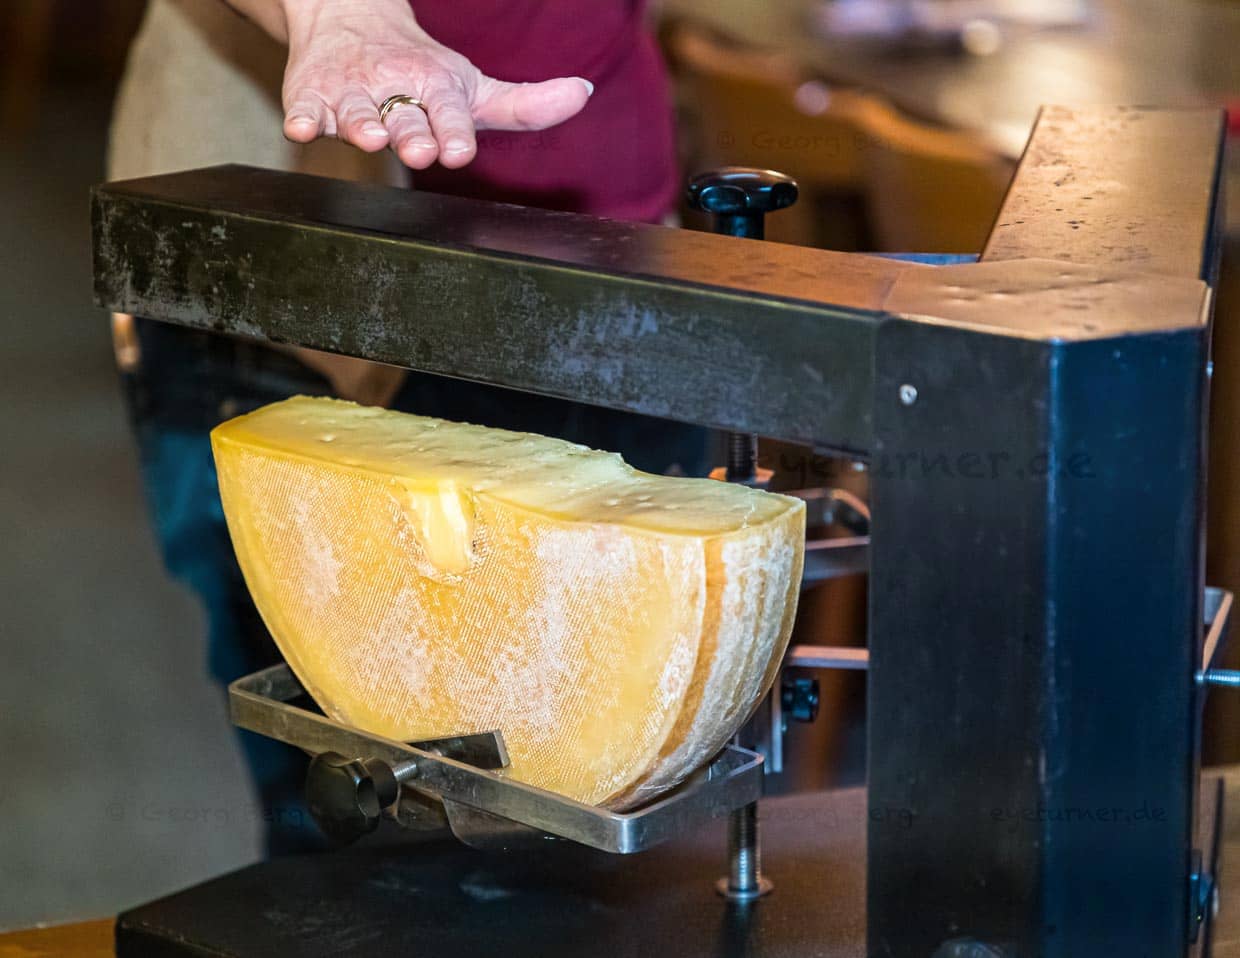 Heißes Ding! Der 3er Raclette-Ofen ist eine Art Käse-Karussell mit zwei Armen und drei Käsehalterungen. Der Käse rotiert und die Raclette-Gesellschaft bekommt stetig flüssigen Käse auf den Teller gestrichen / © Foto: Georg Berg